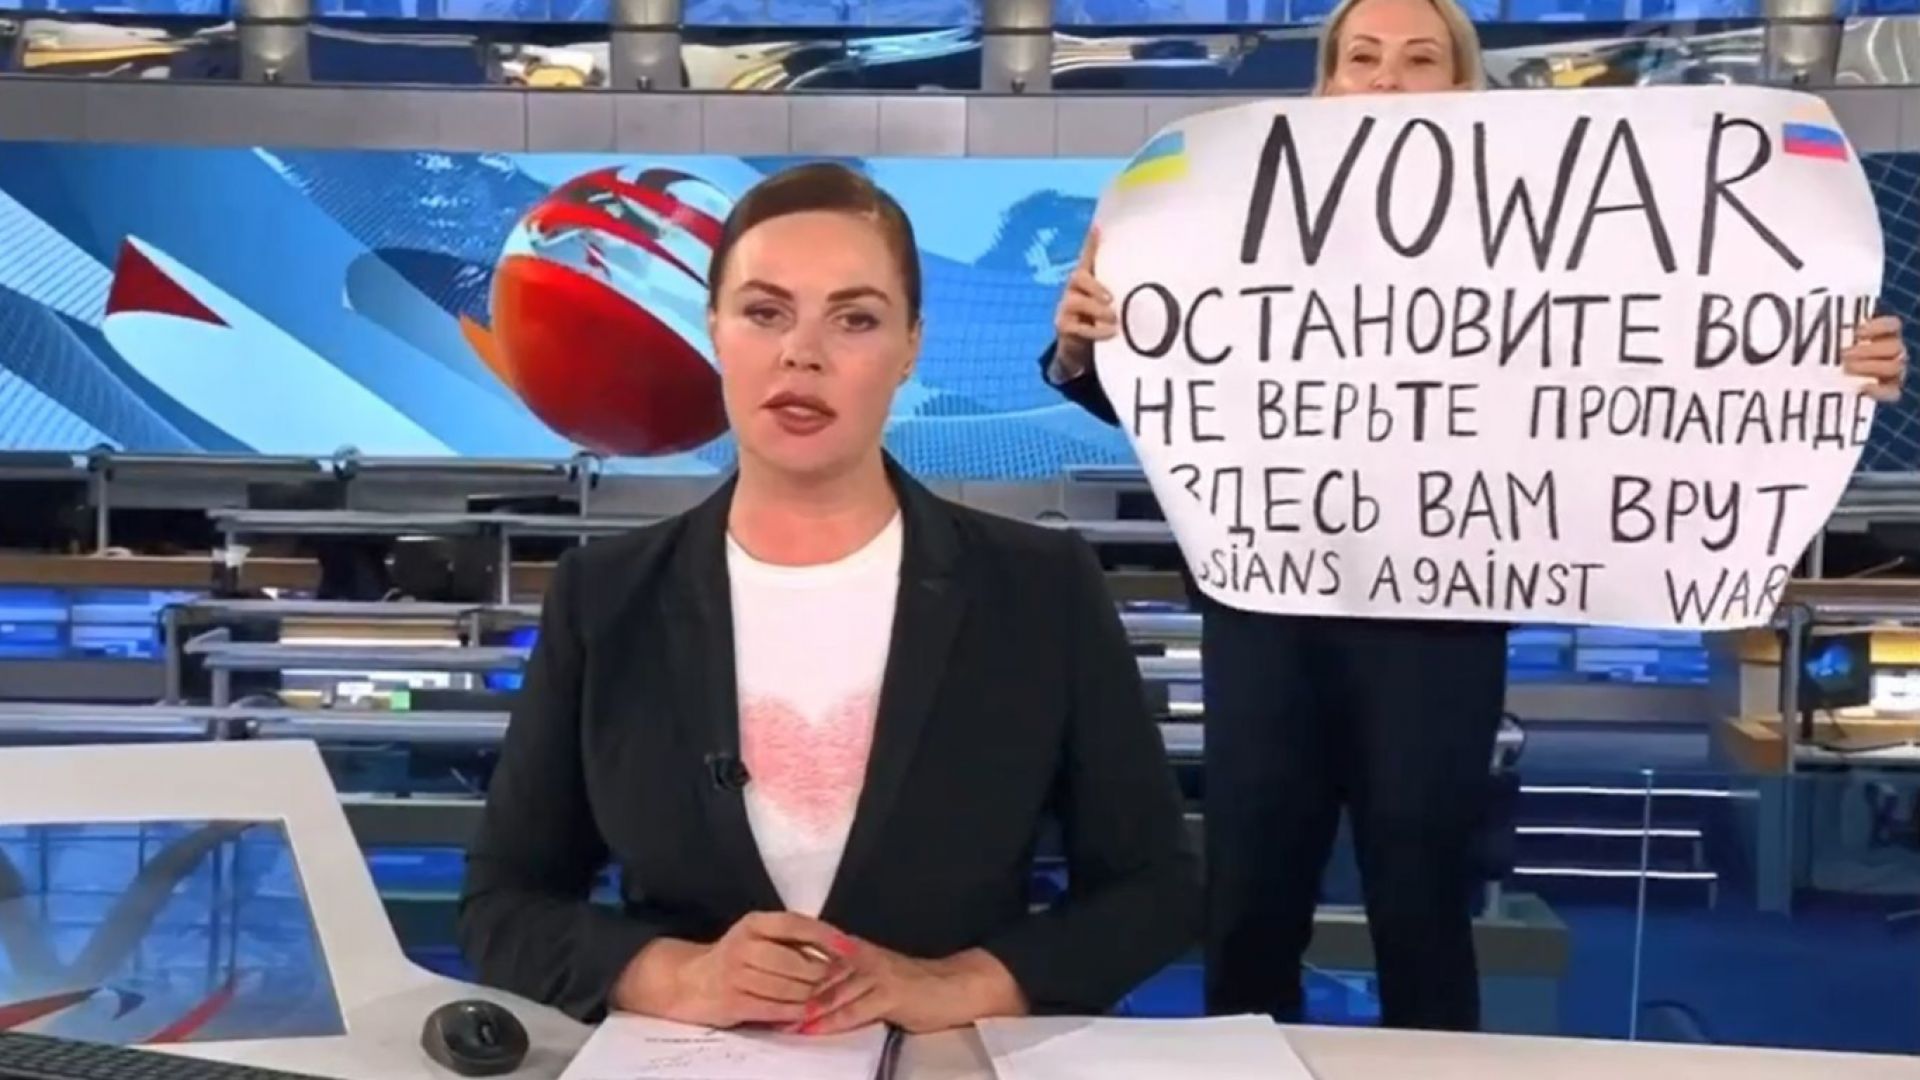 Журналистката, която издигна антивоенен плакат в руския тв ефир, с първо изявление след ареста